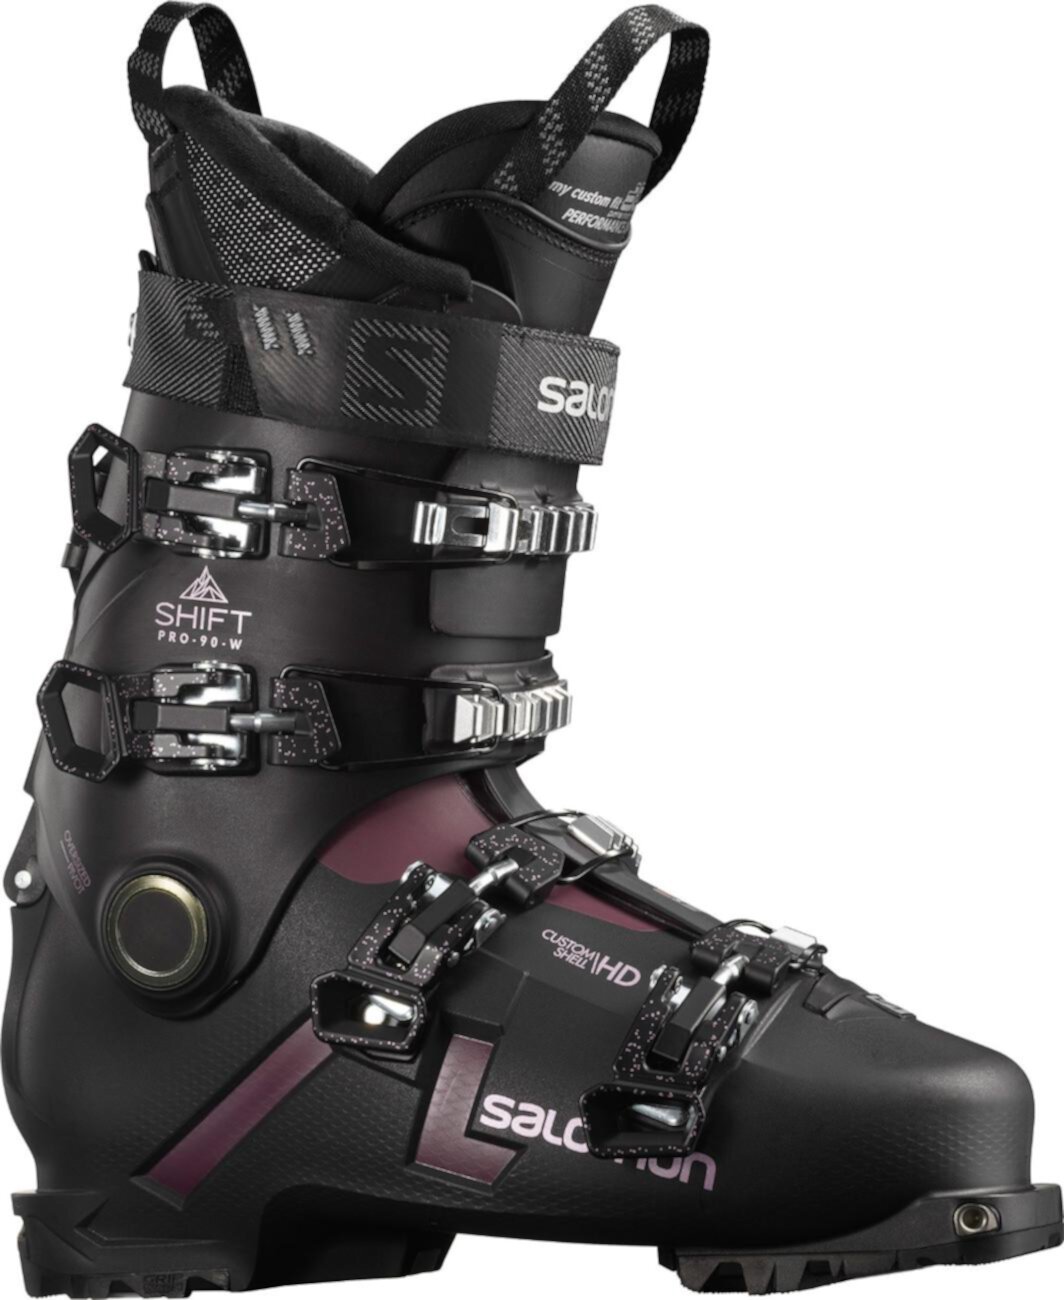 Лыжные ботинки Shift Pro 90 W Alpine Touring - женские - 2021/2022 Salomon